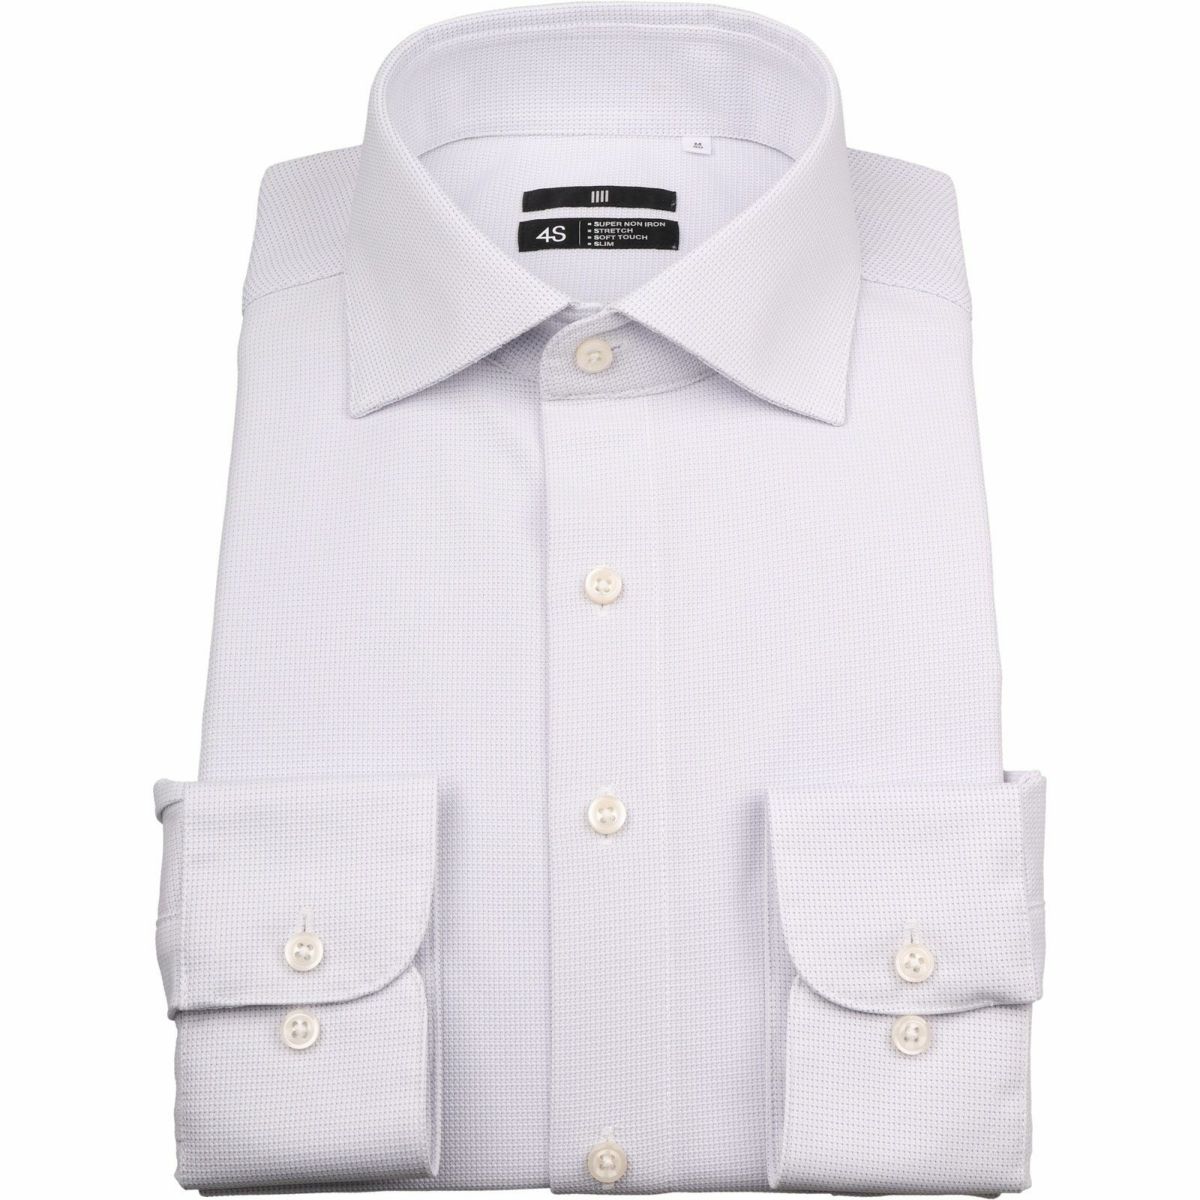 ワイシャツおすすめ25選 最高のコスパ優秀シャツ 人気ブランドを厳選 紳士のシャツ